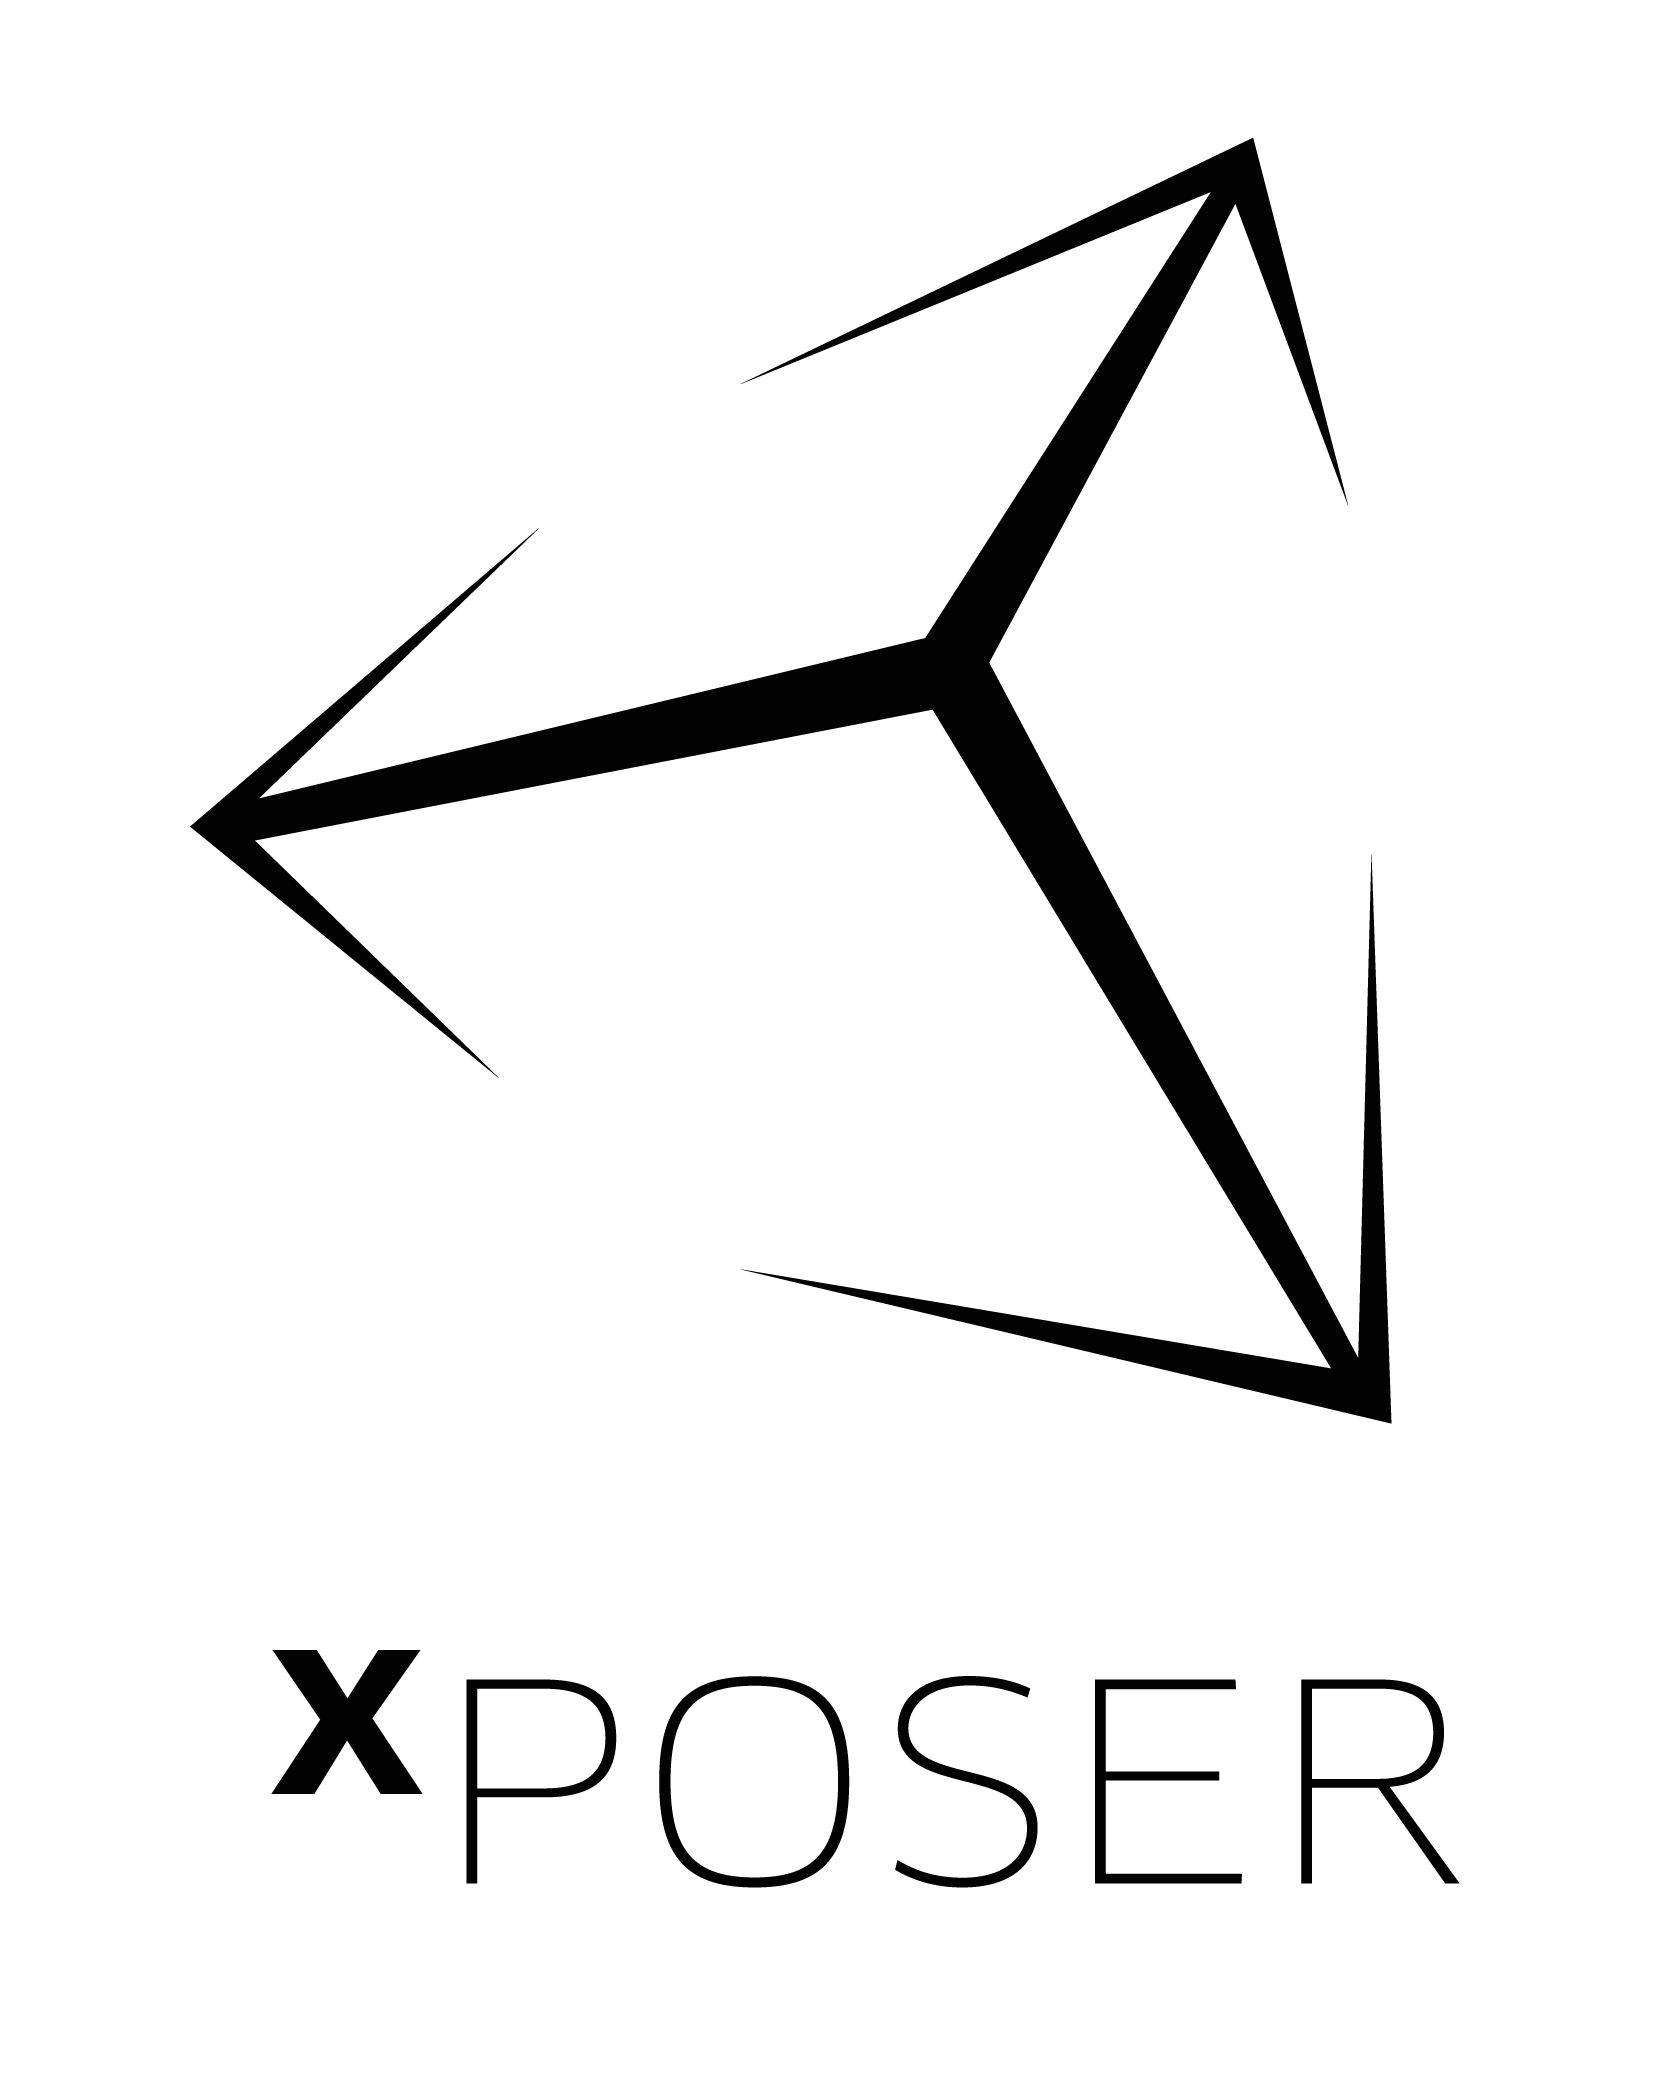 XPOSER_LOGO_blk-01